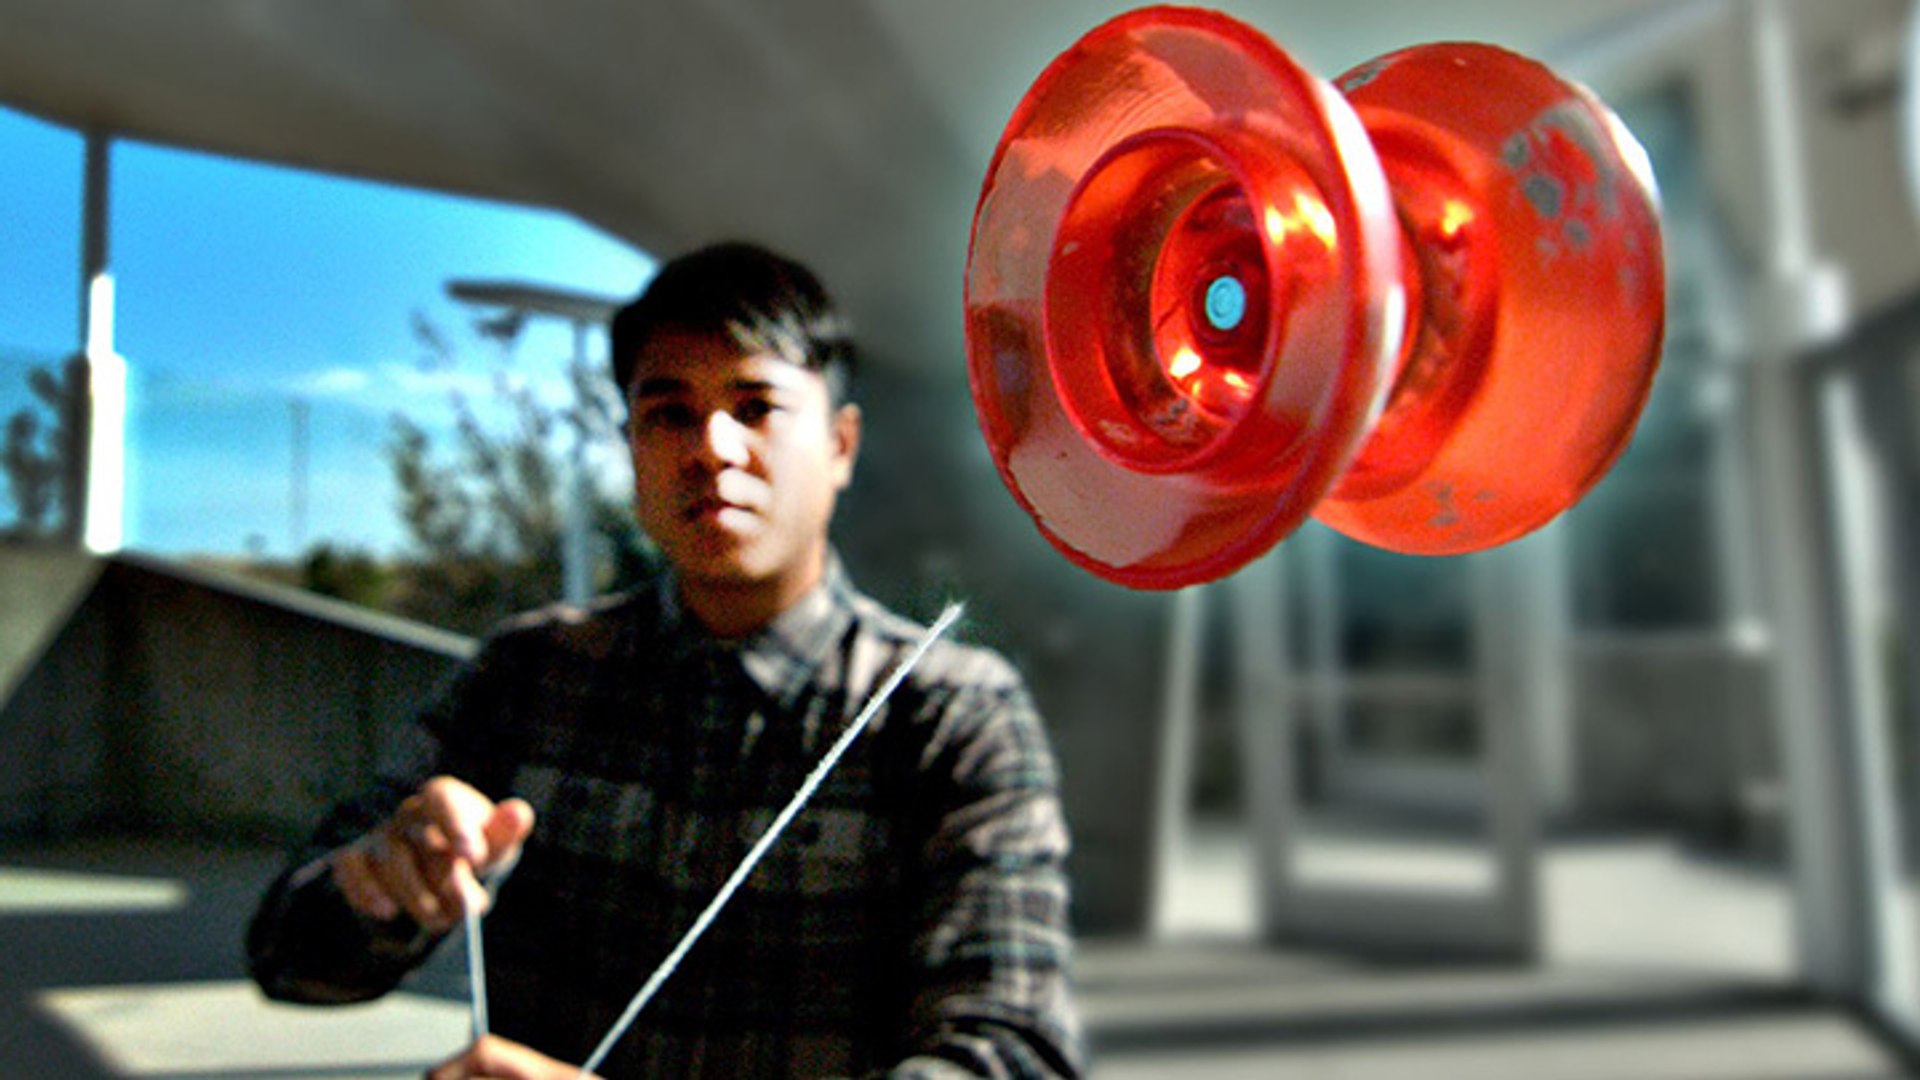 Ben Conde réalise une performance avec son yo-yo et une ficelle détachée